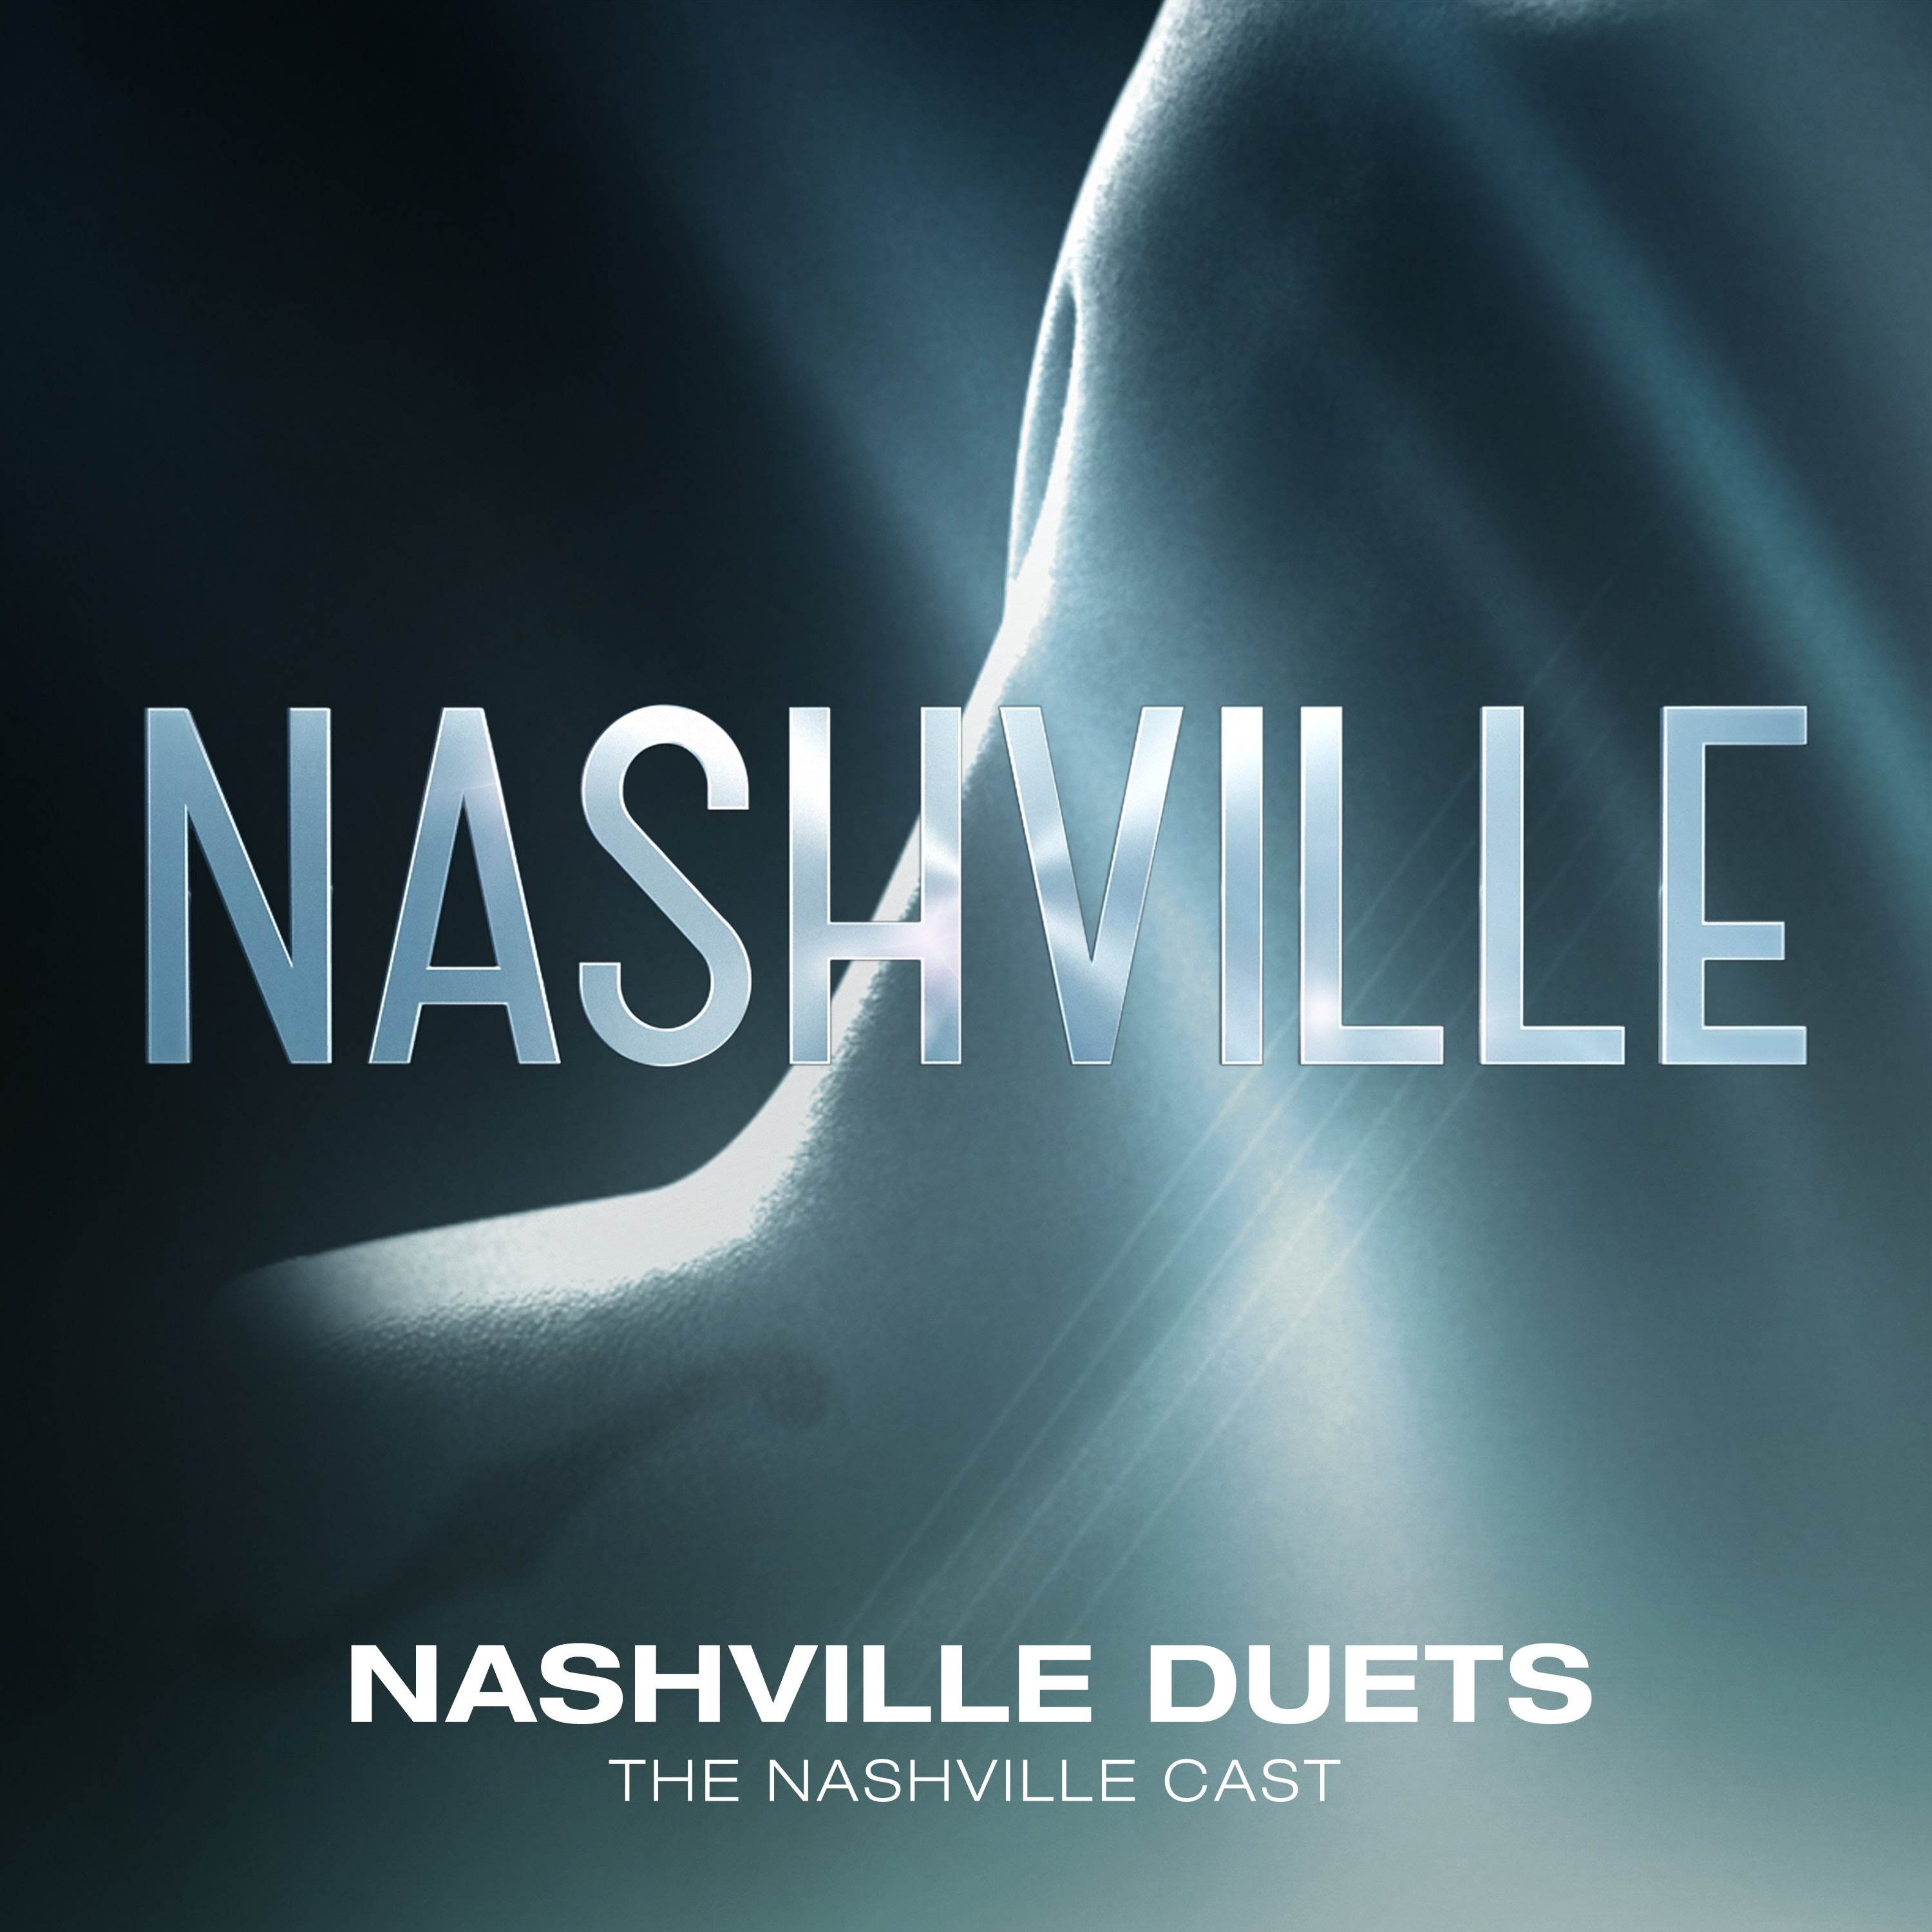 The Cast of CMT’s ‘Nashville’ to Release New ‘Nashville Duets’ Album